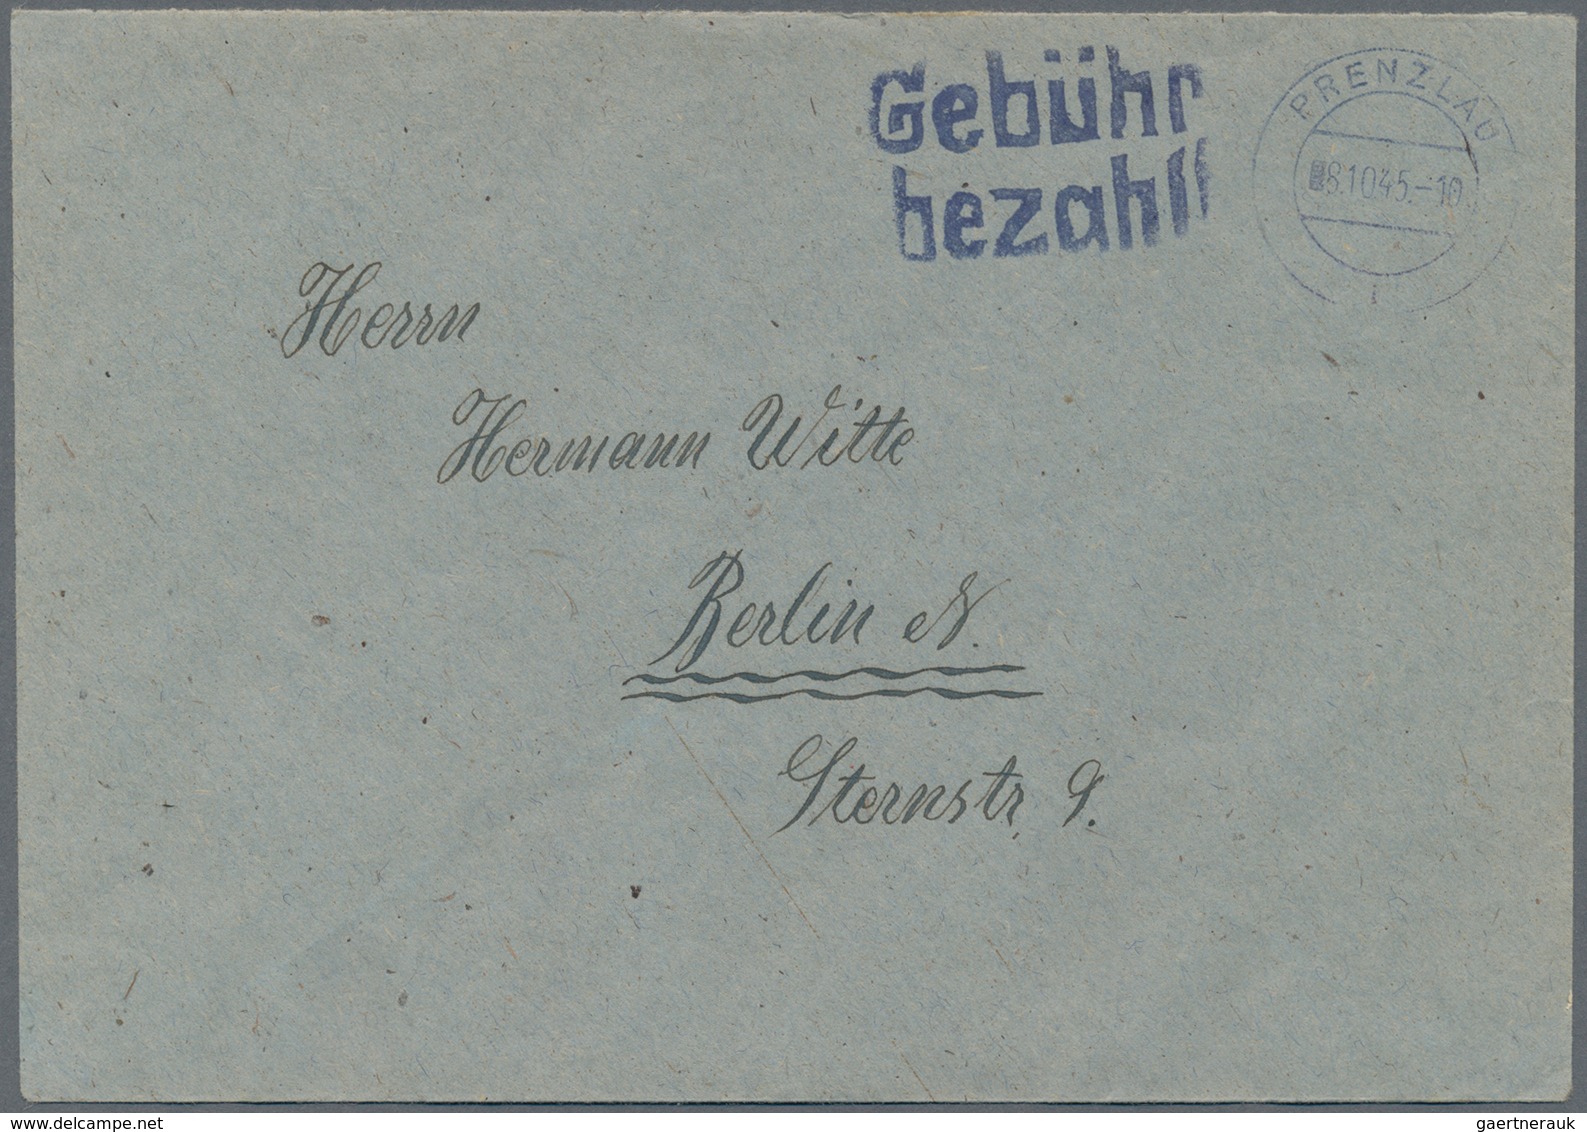 Alliierte Besetzung - Gebühr Bezahlt: Sowjetische Zone: 1945/1951, Berlin/Brandenburg, saubere Parti